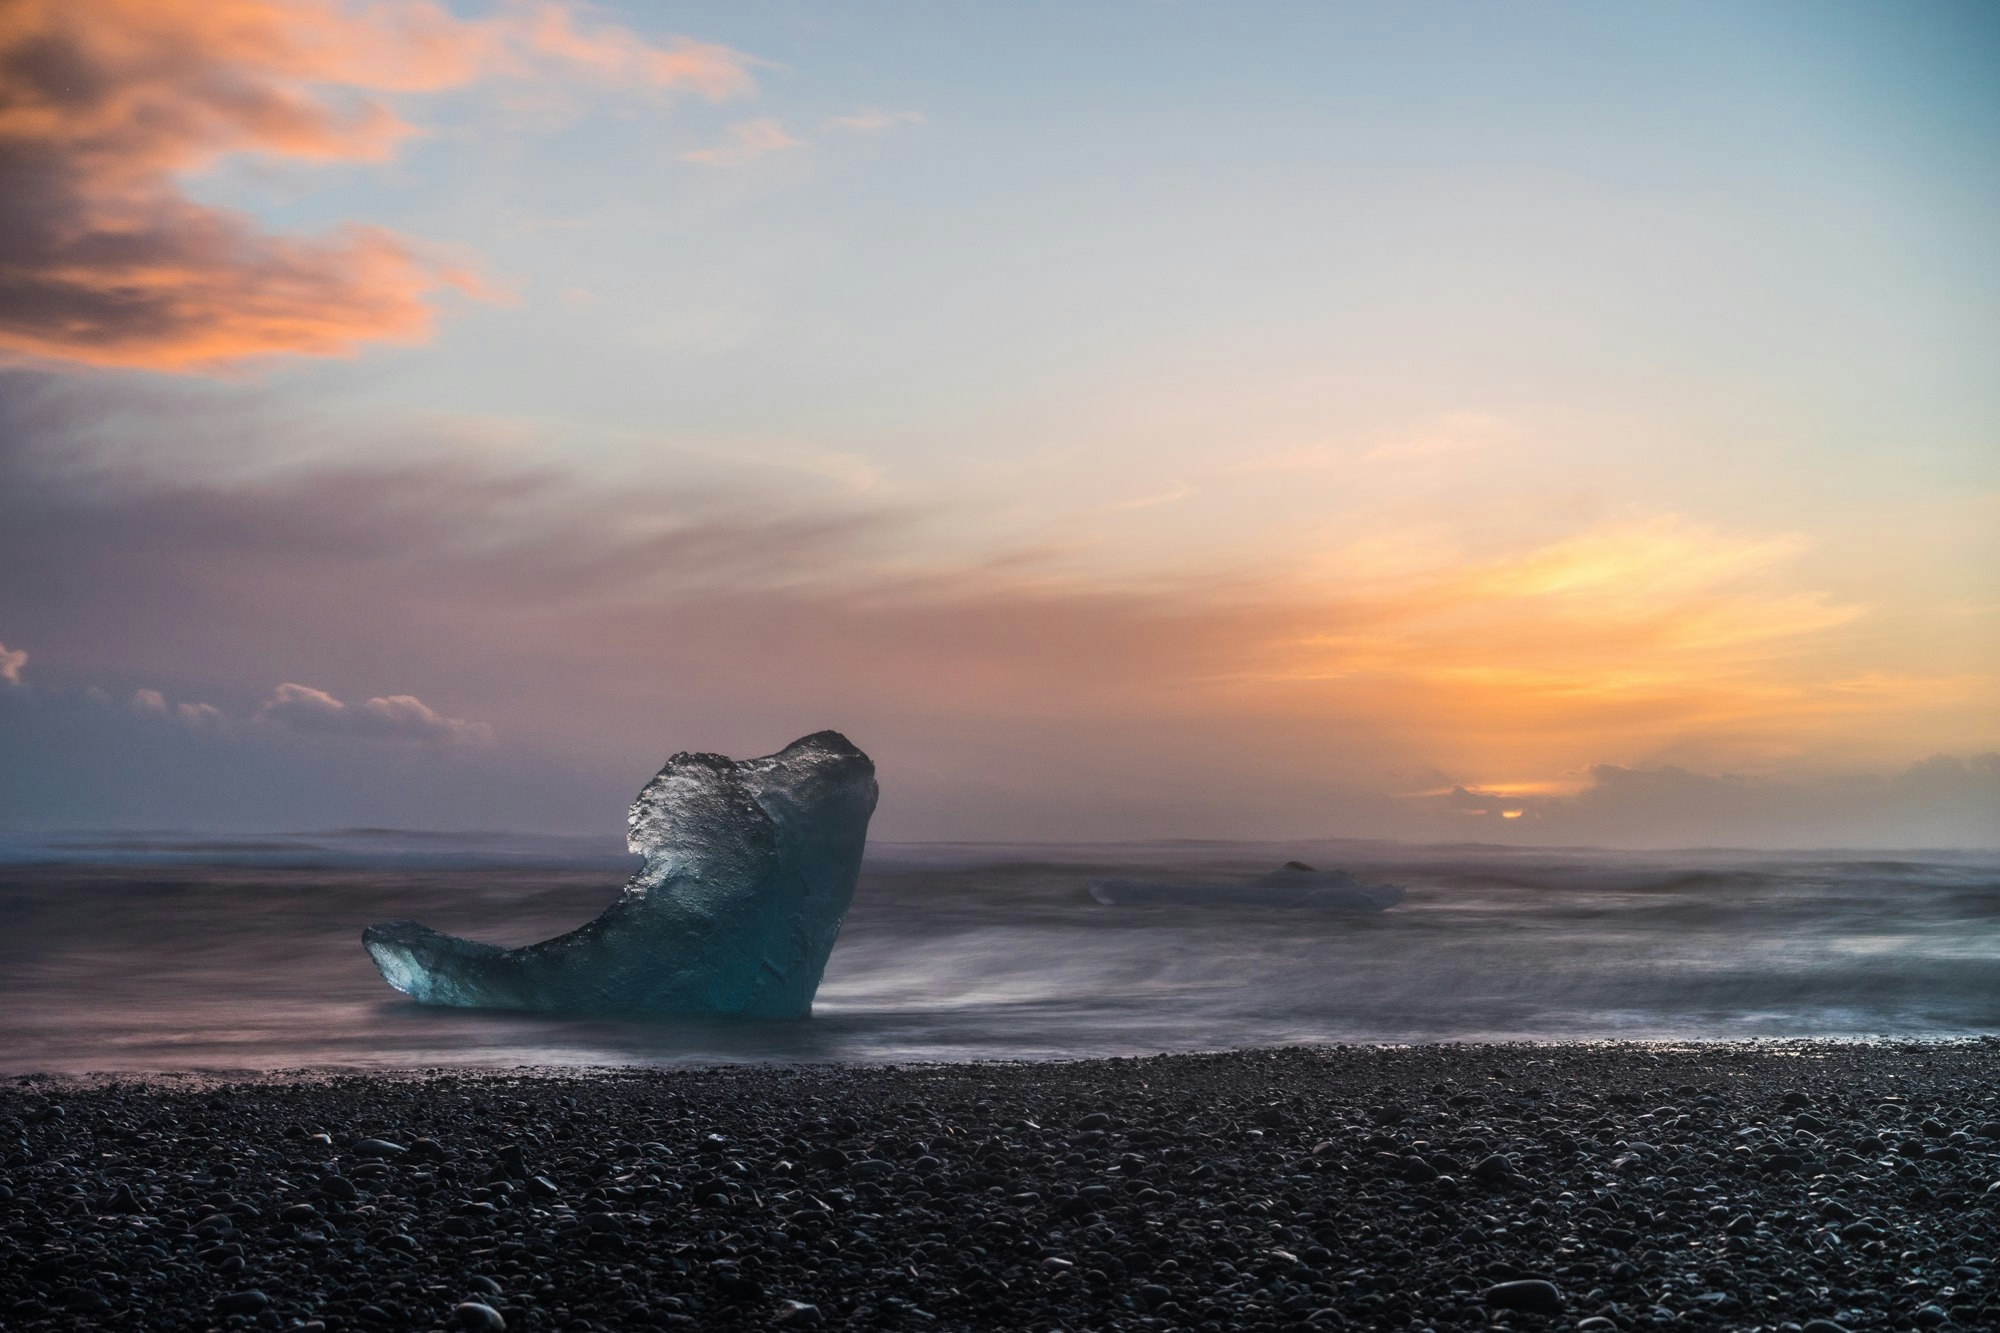 Fotos van IJsland: Jokulsarlon gletsjermeer